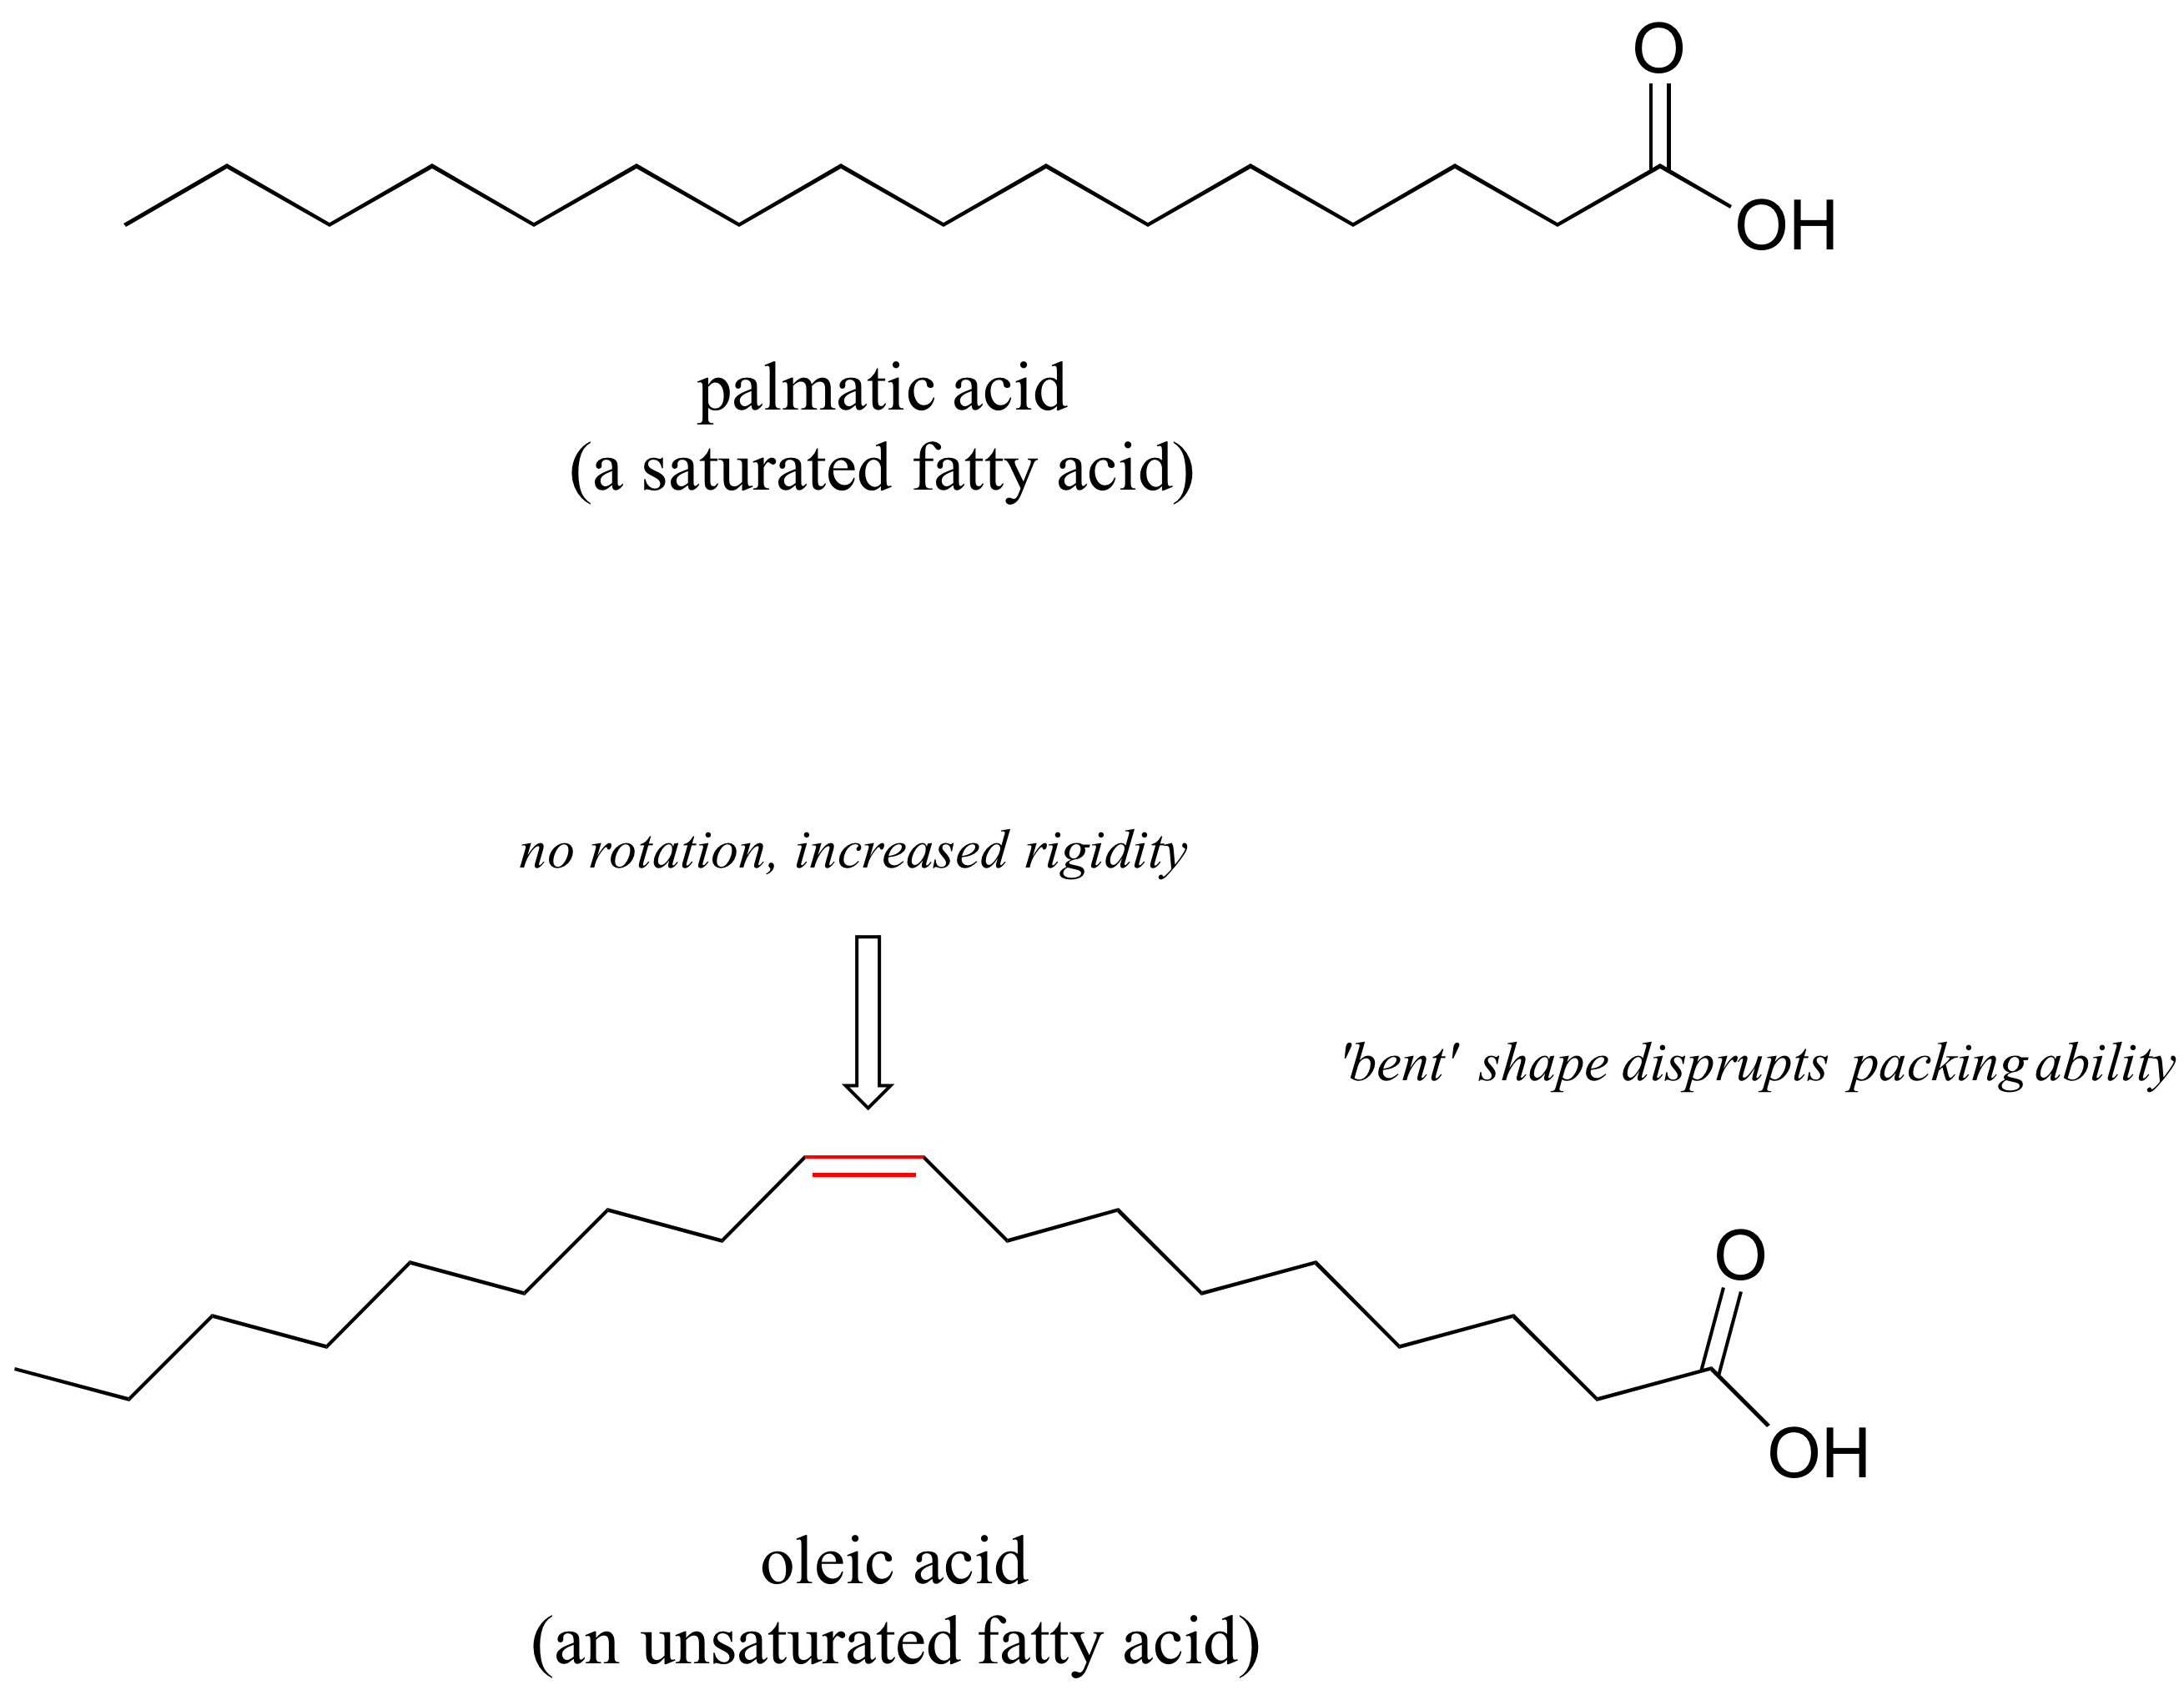 Dibujos de líneas de unión de ácido palmático, un ácido graso saturado y ácido oleico, un ácido graso insaturado. El ácido oleico tiene un doble enlace en la cadena de carbono que aumenta la rigidez y evita la rotación. También le da al ácido oleico una forma doblada que altera la capacidad de empaque.